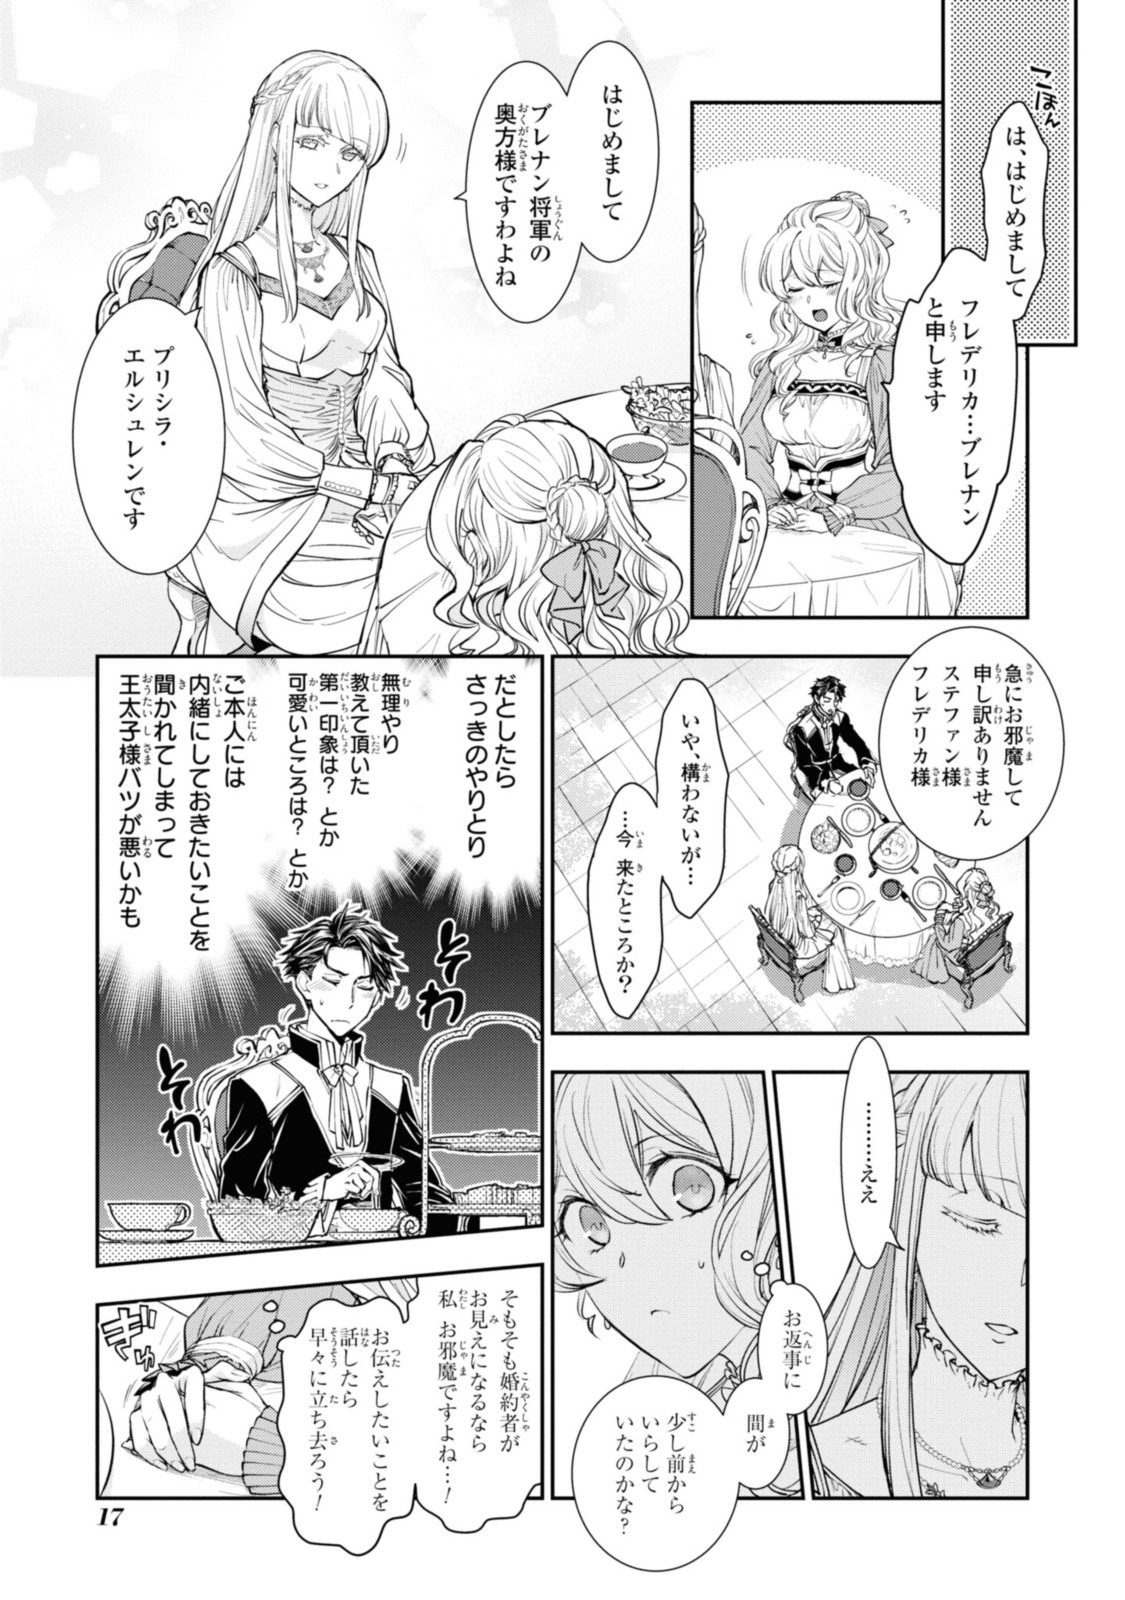 Sakkon no Cinderella wa Kutsu wo Otosanai. - Chapter 11.2 - Page 2